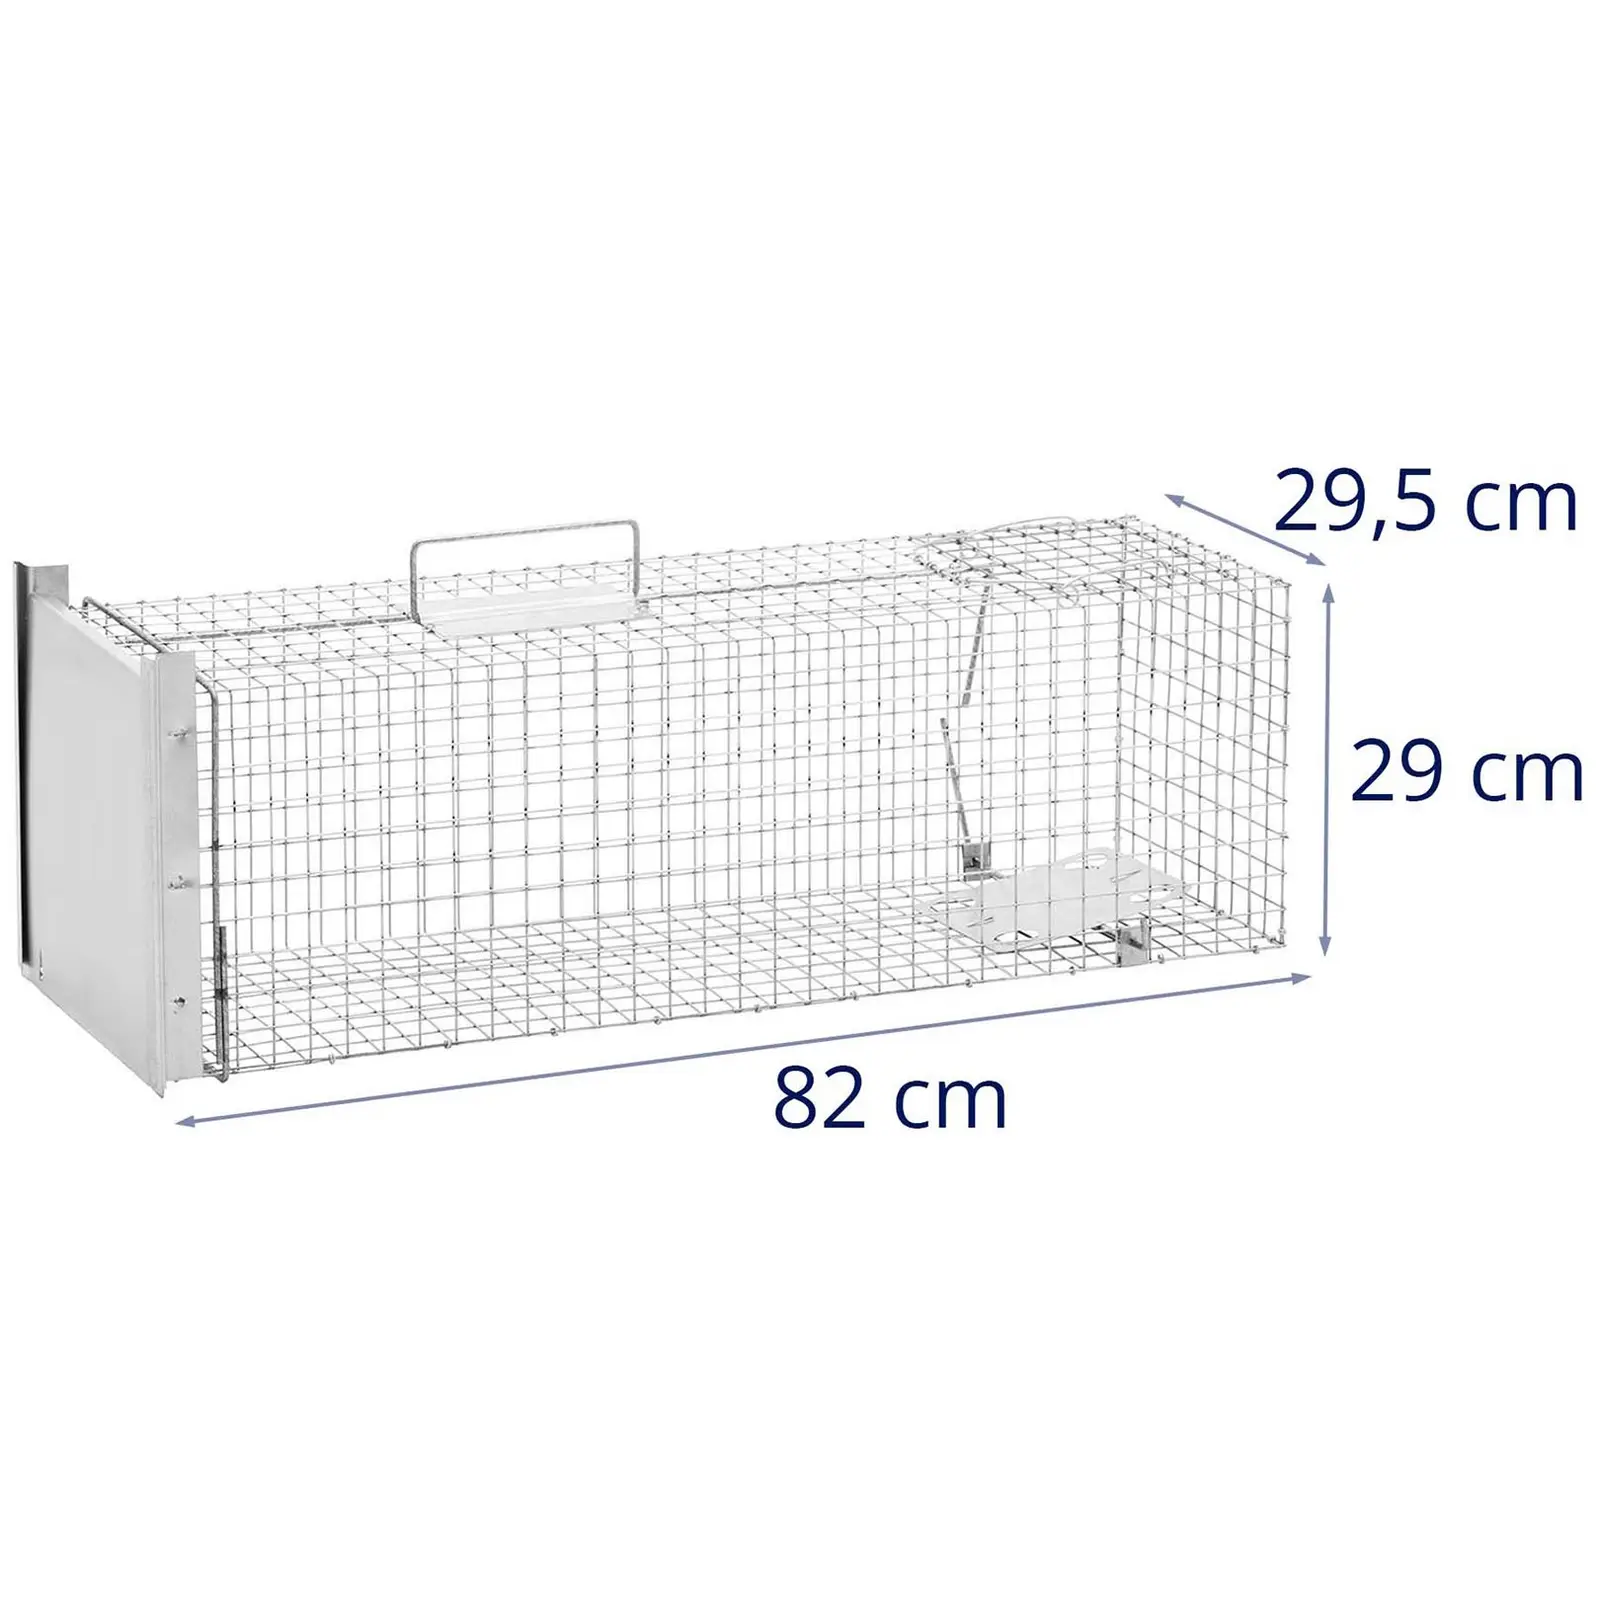 Trappola per animali - 82 x 29.5 x 29 cm - Dimensioni della grata: 25x25 mm